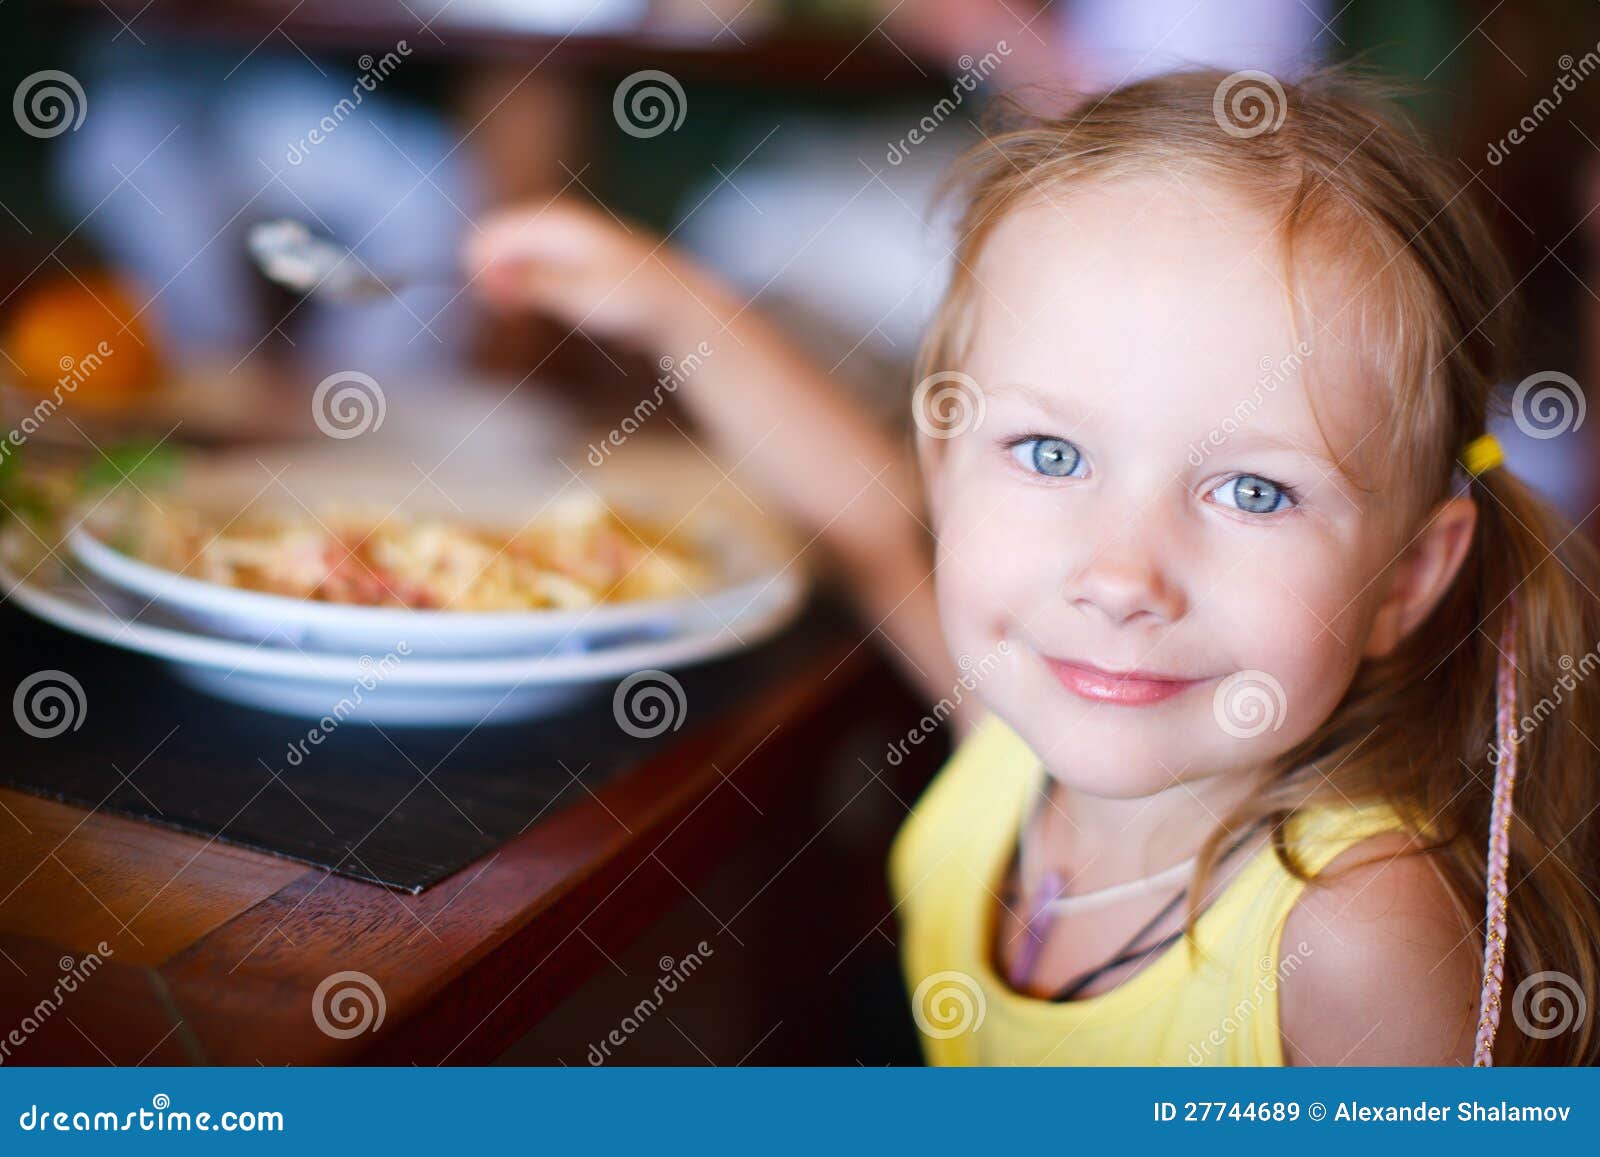 可爱的中国小女孩吃饺子 库存图片. 图片 包括有 饥饿, 人们, 易于, 背包, 字符, 筷子, 少许 - 228398431